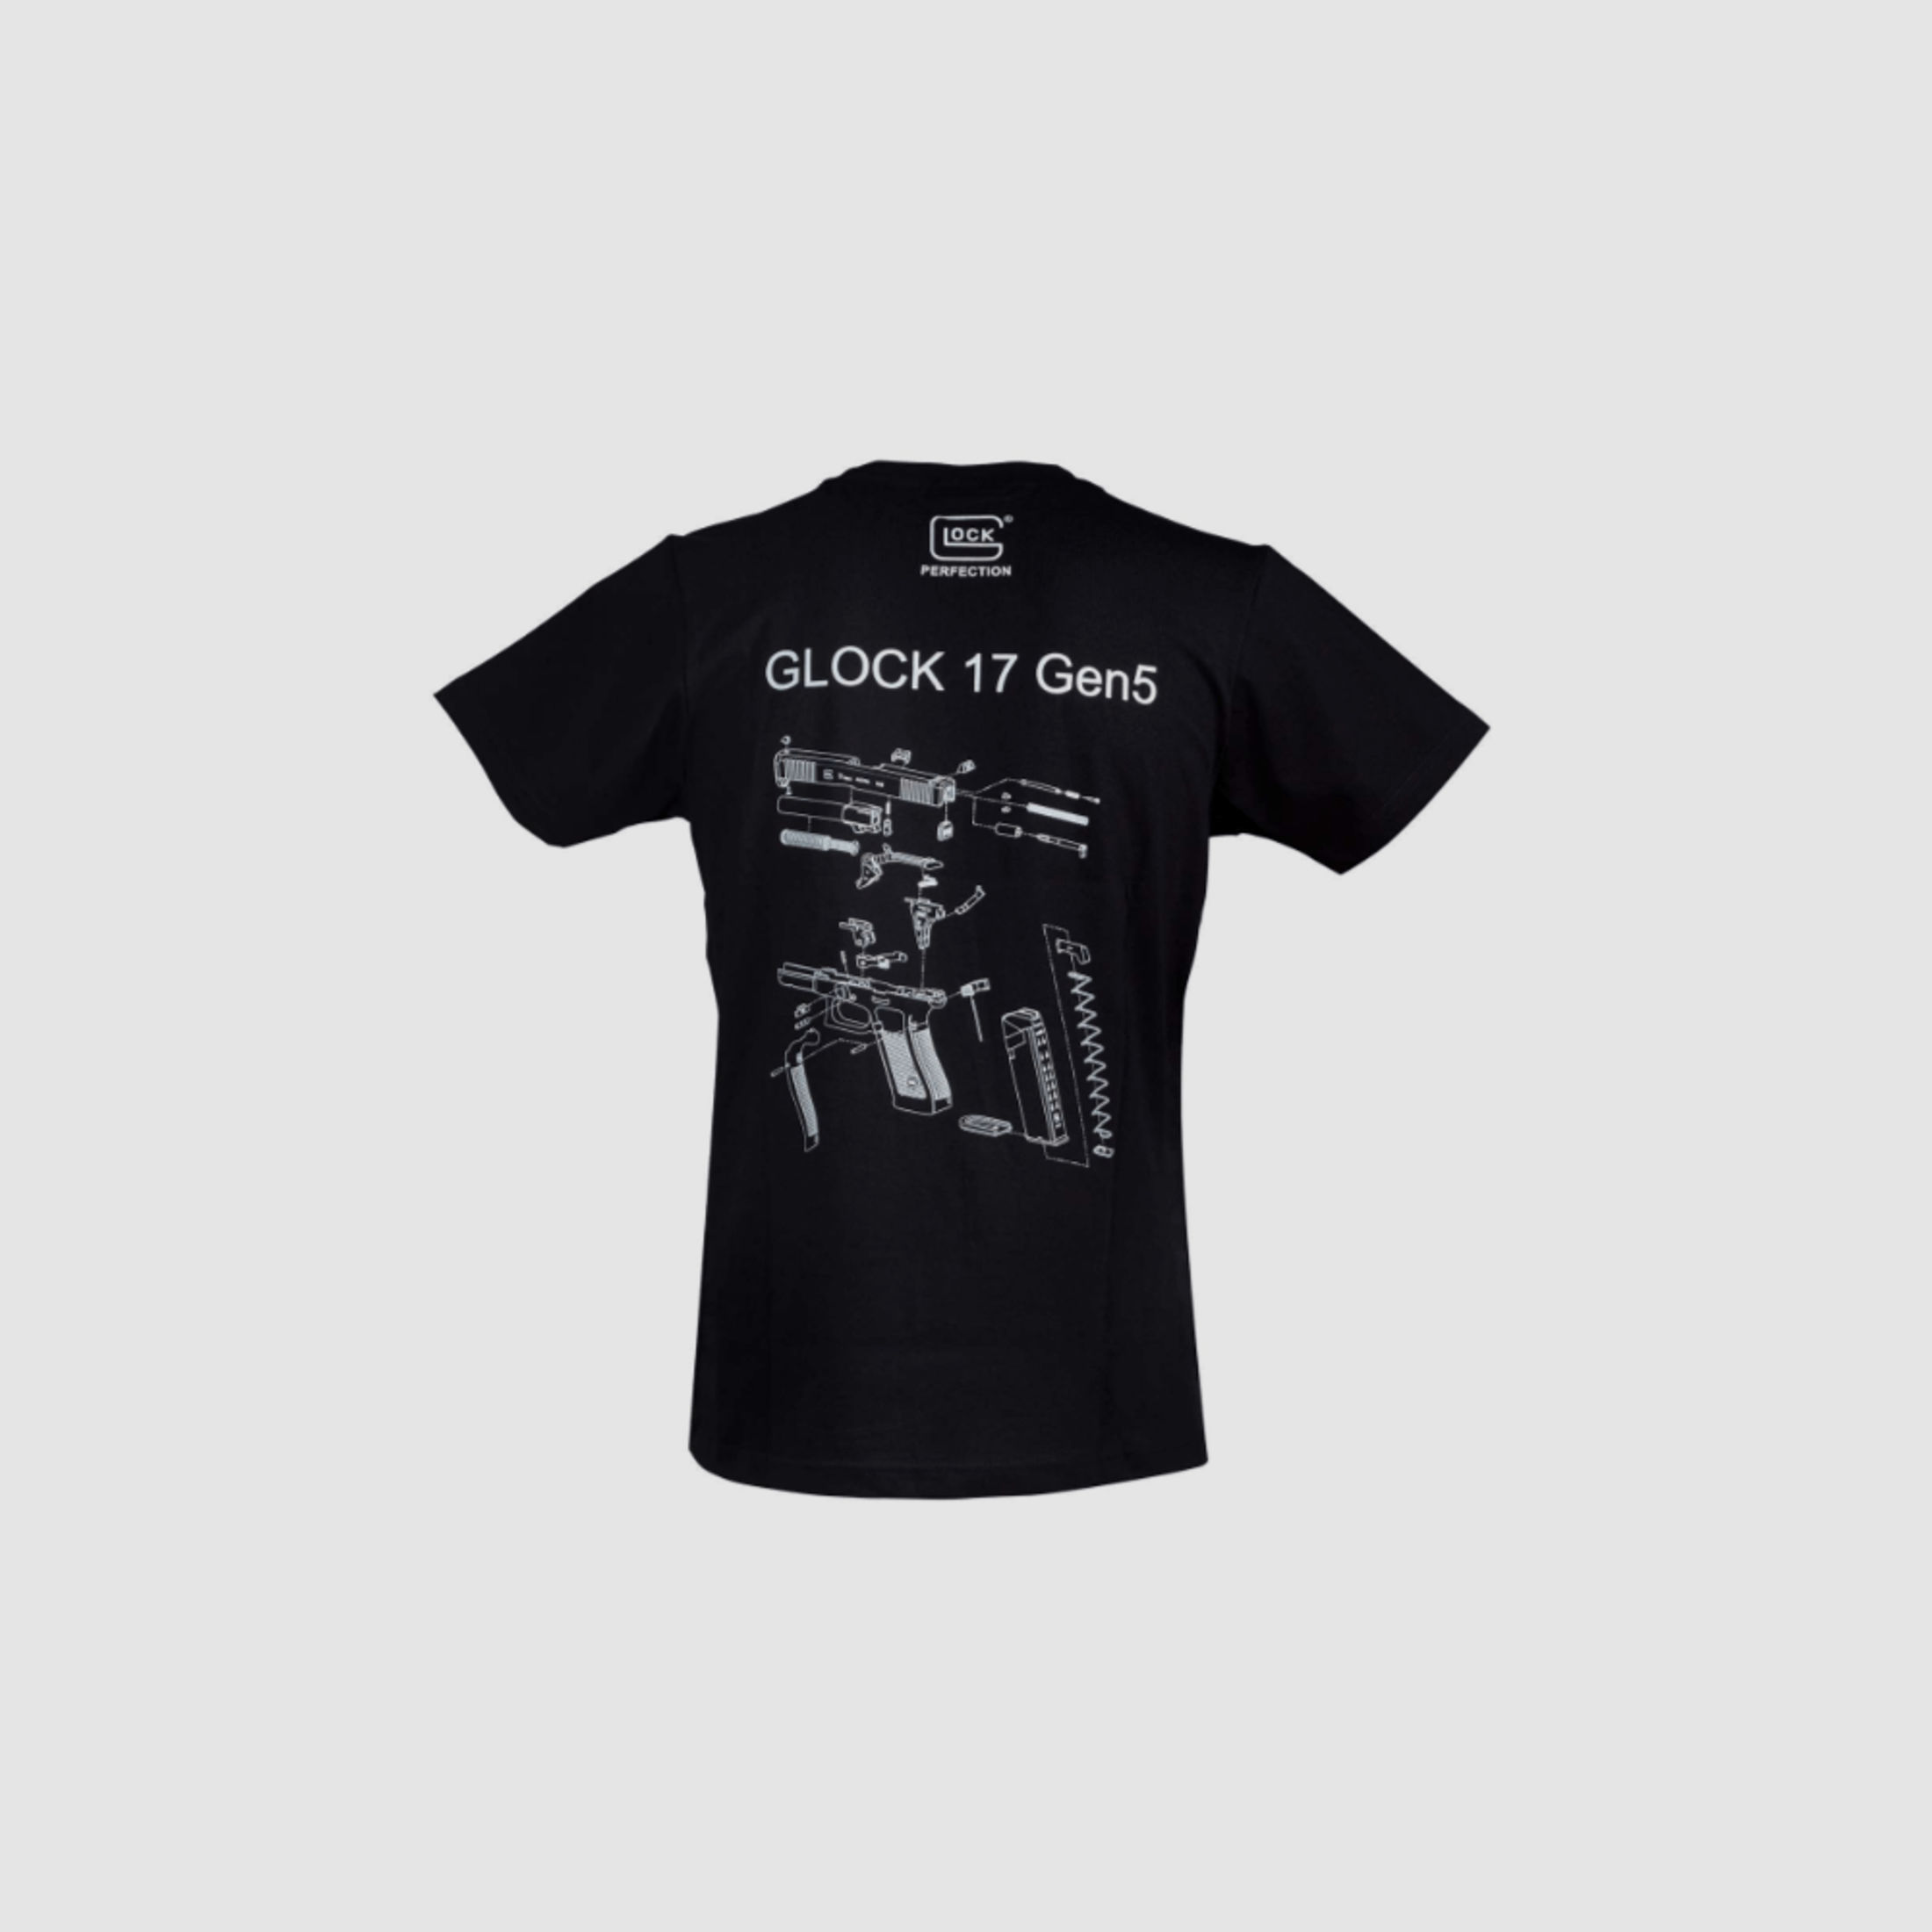 GLOCK T-Shirt “Engineering” Gen5 Größe L